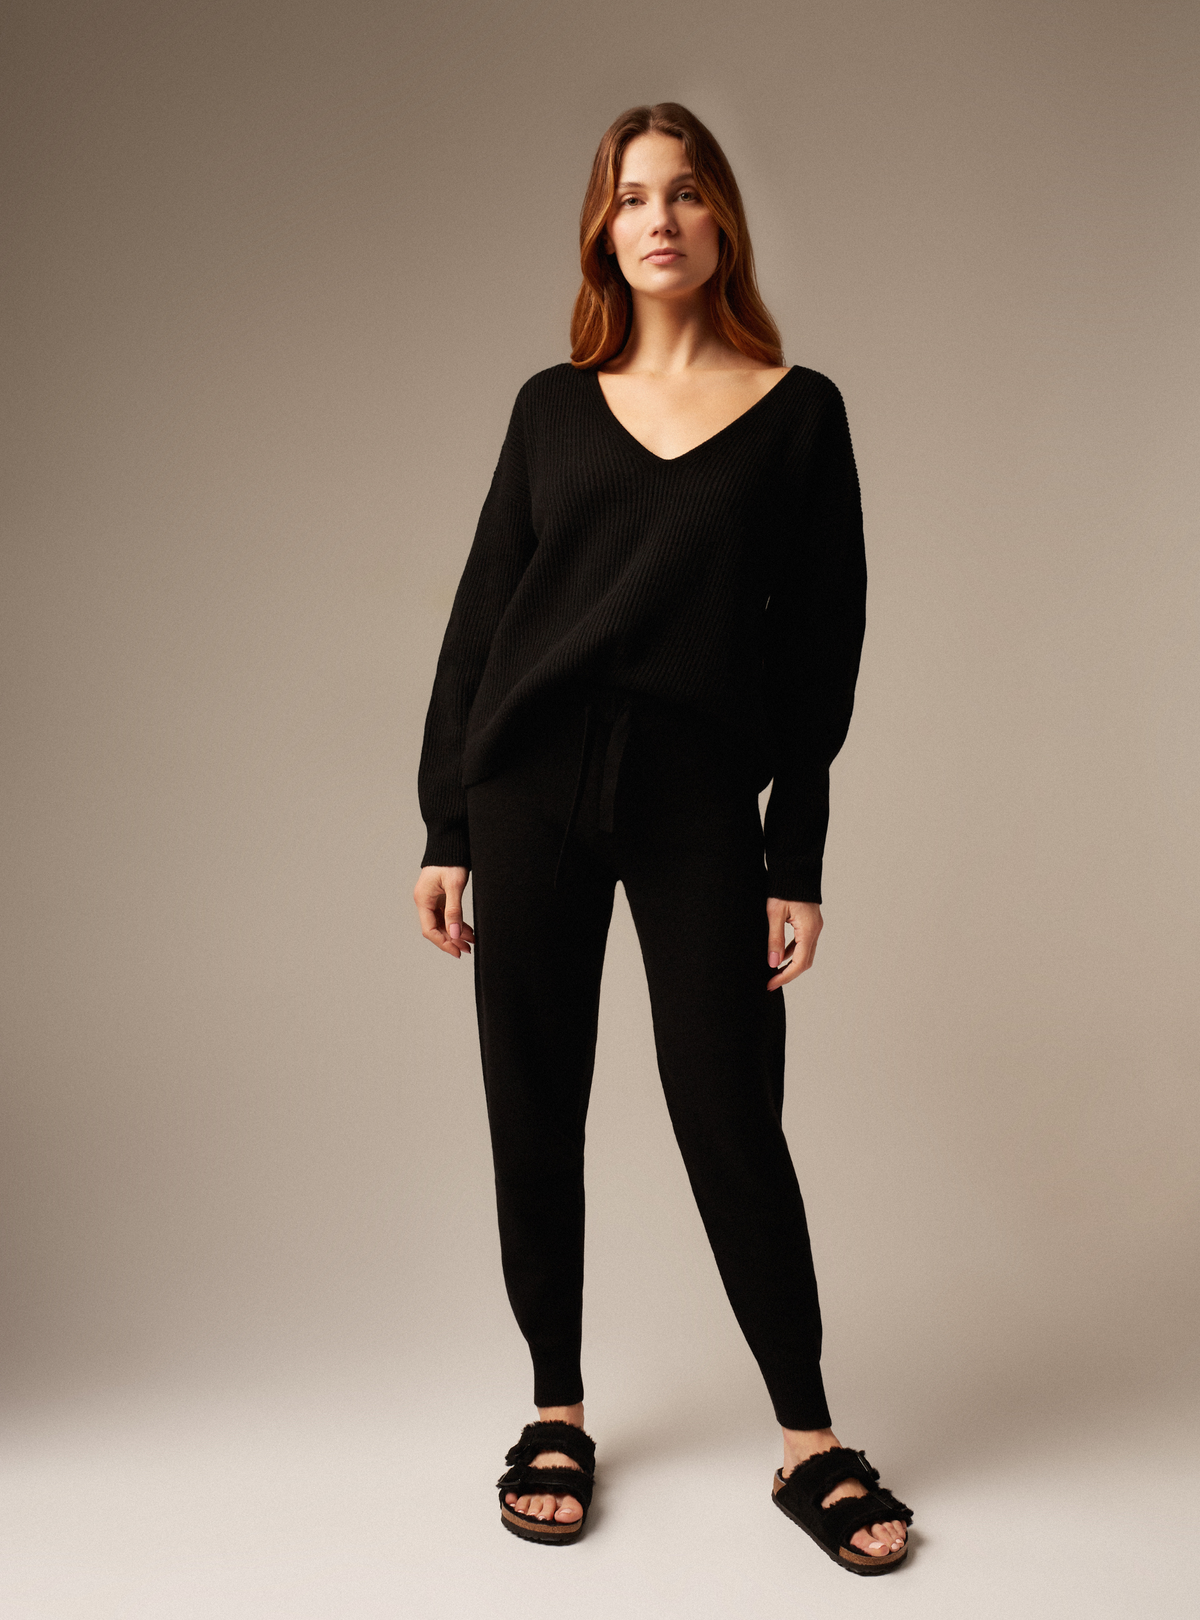 Designer cashmere knit V neck oversized jumper Black